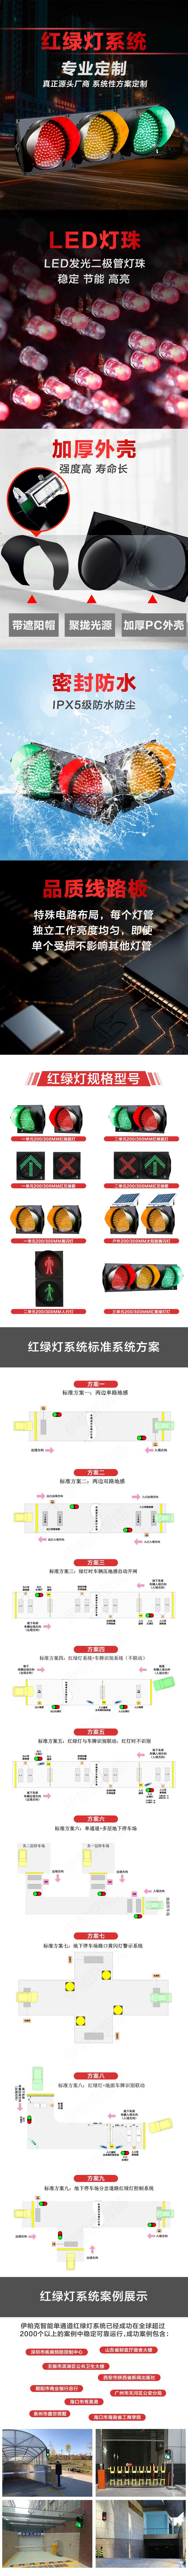 二單元200MM紅綠圓燈